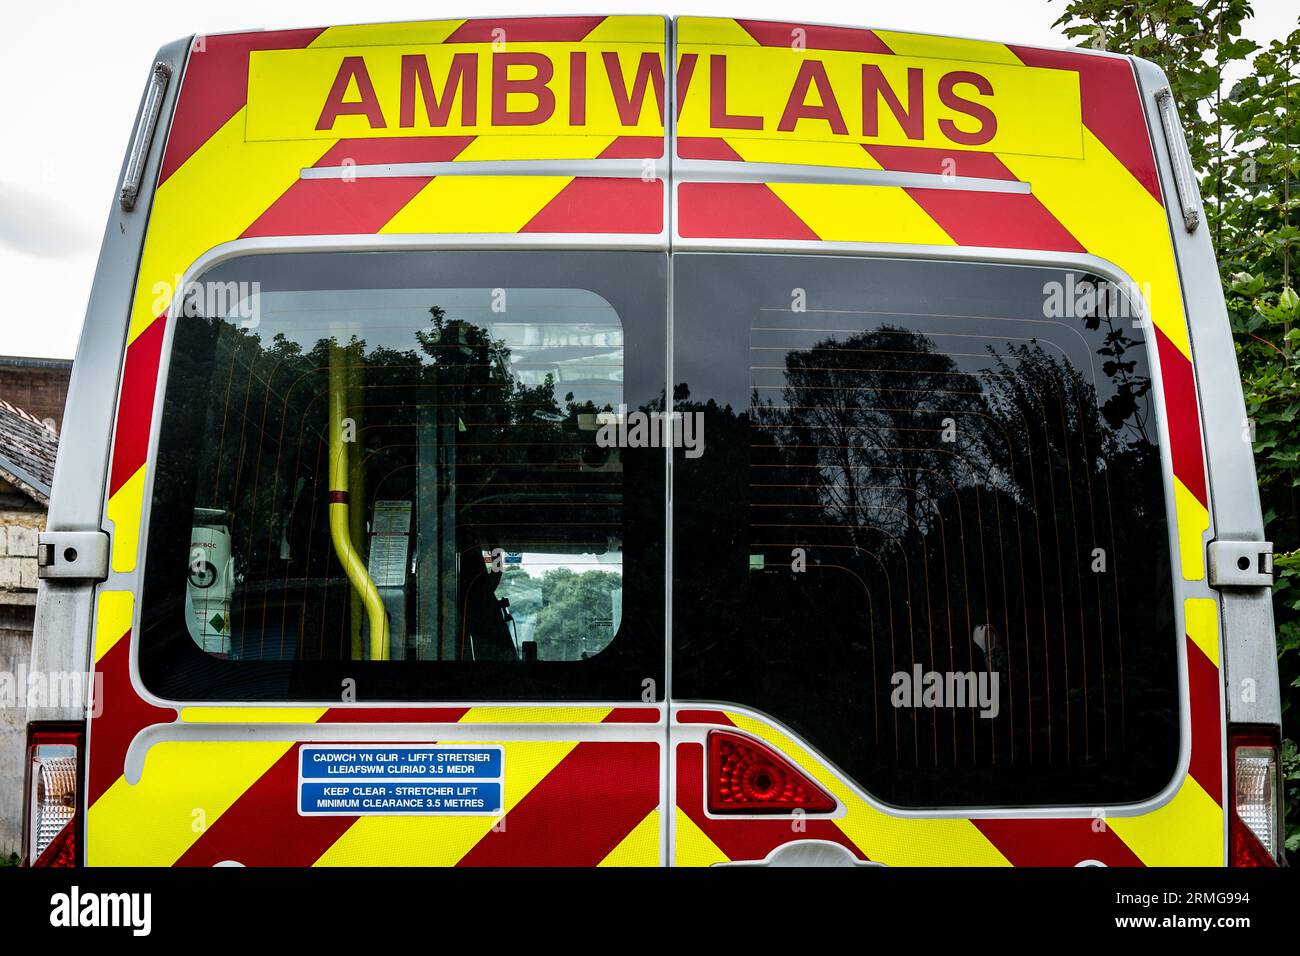 Waliser Ambulanznotdienst Ambiwlans. Ansicht der roten und gelben Gefahrenfarben und der walisischen Sprache. Wales NHS. Ambulance Trust. 999 Stockfoto